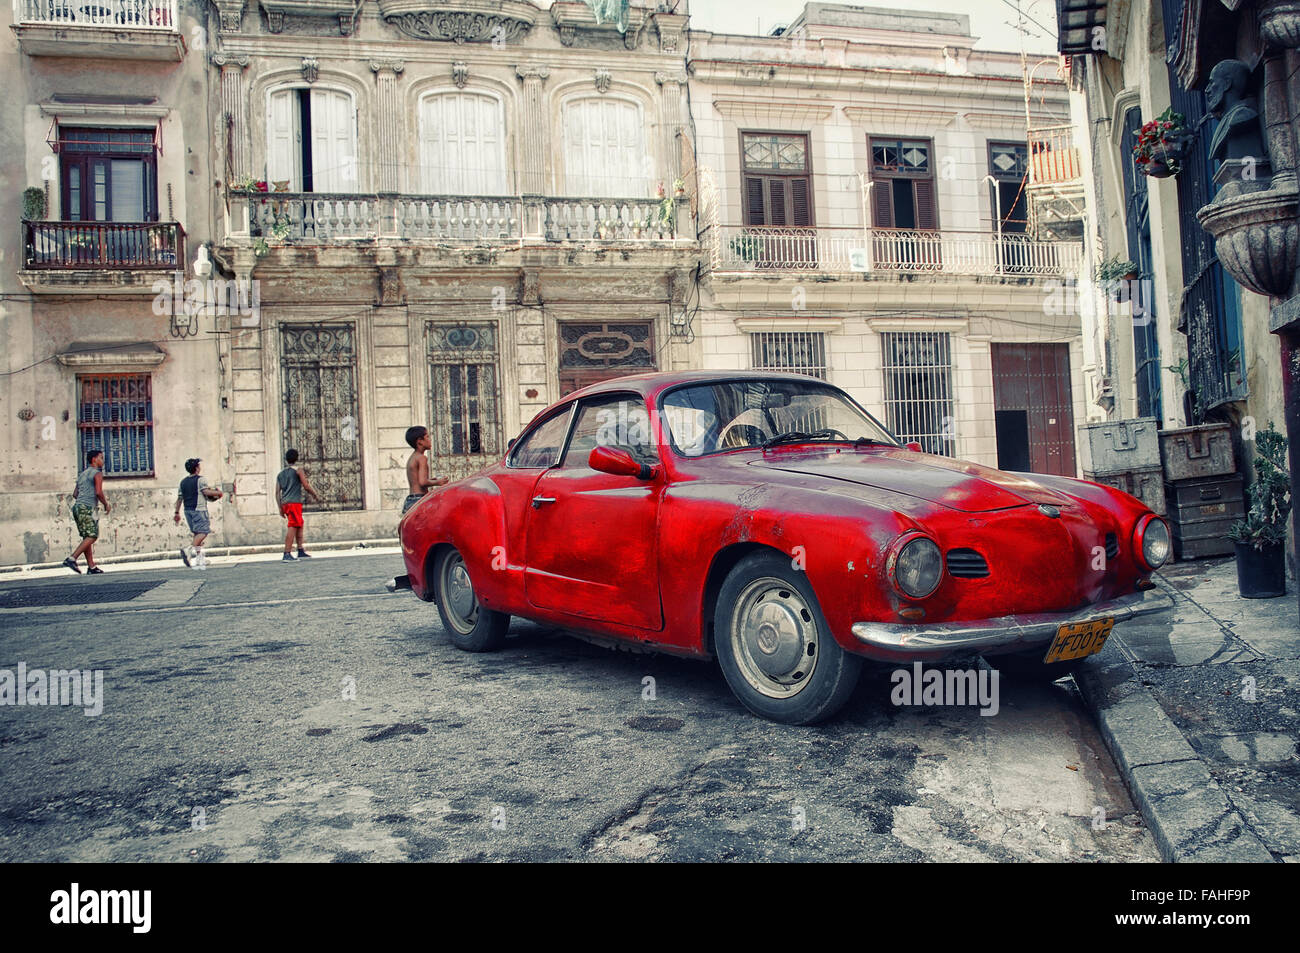 La Habana, Cuba - 5 oct, 2008. Rojo vintage clásico coche americano, comúnmente utilizado como taxi aparcado en la calle de La Habana. Foto de stock